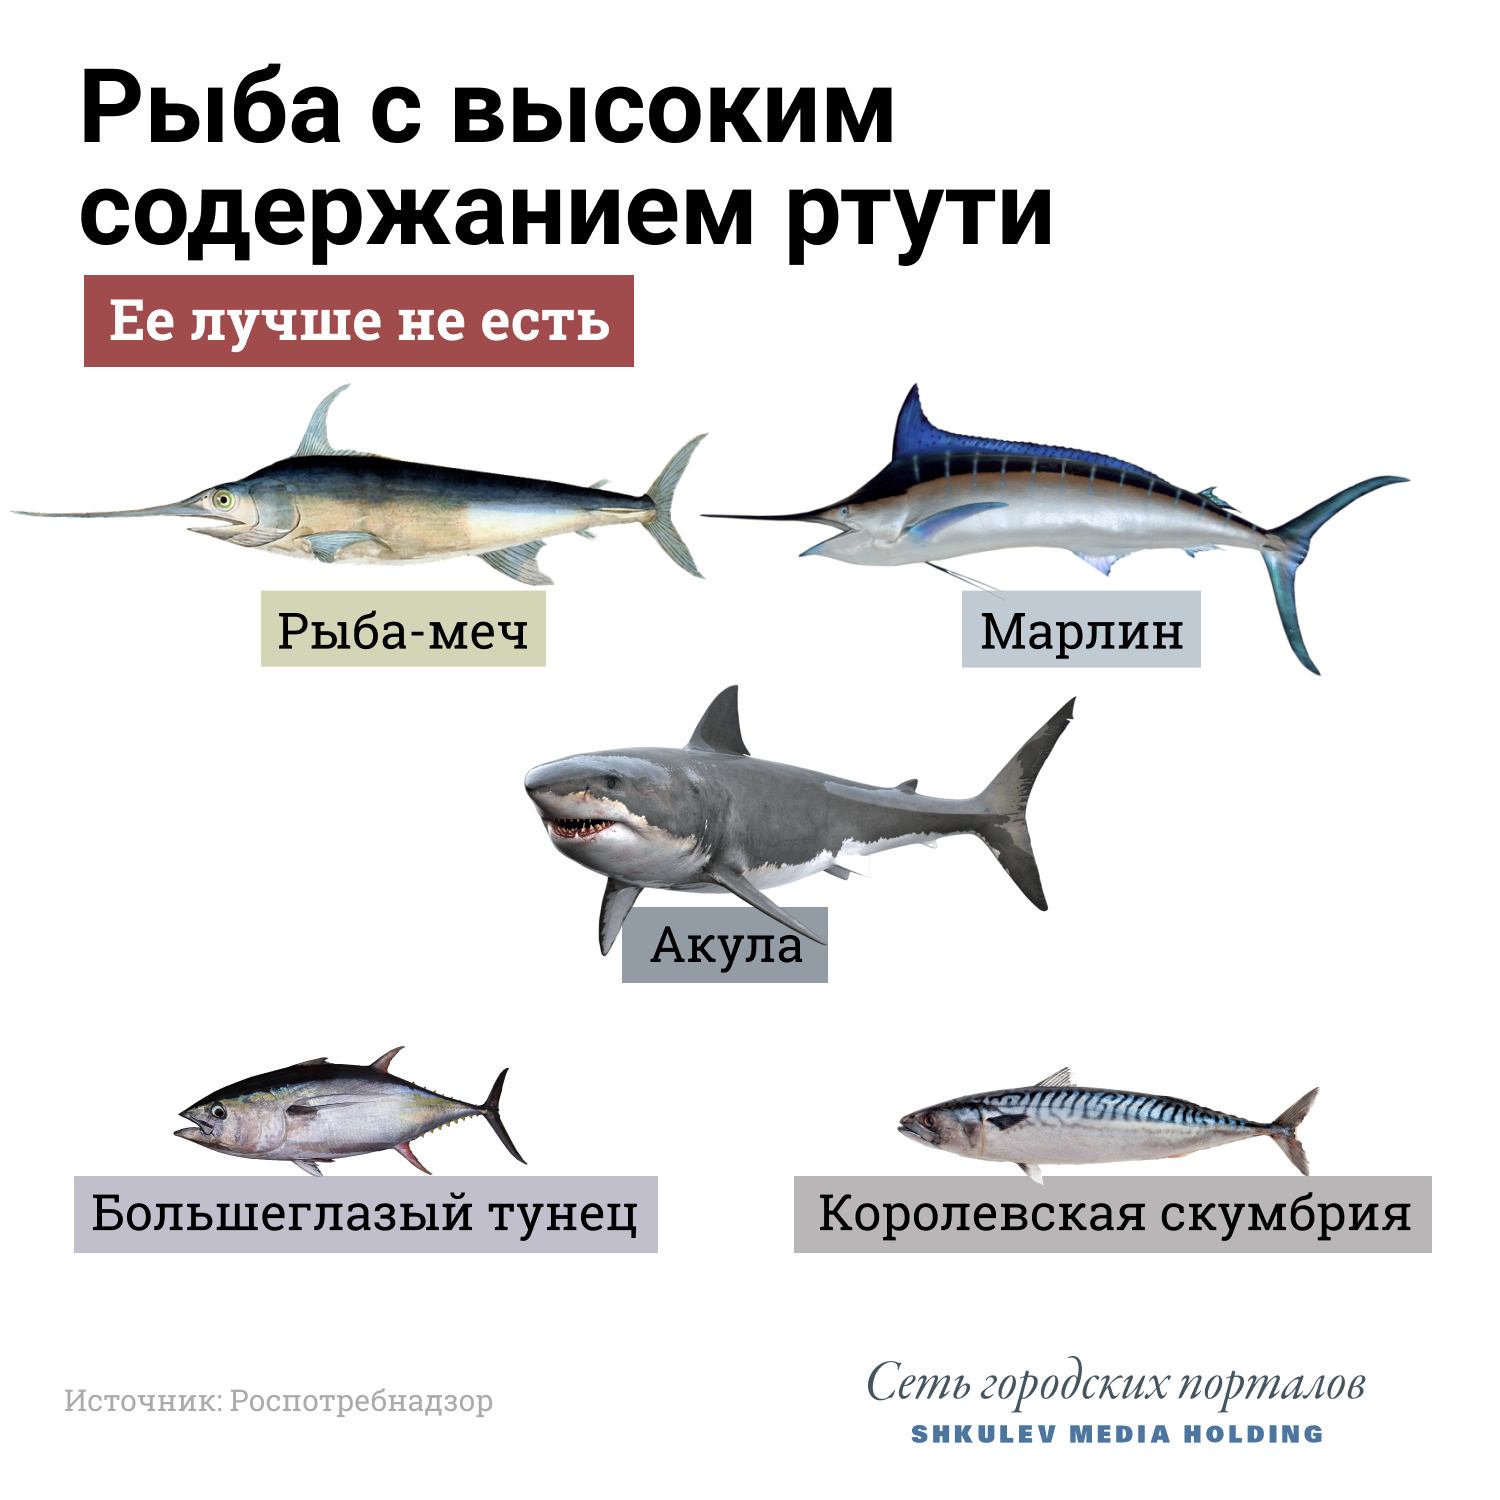 Северные рыбы России: названия, список с фото, интересные факты